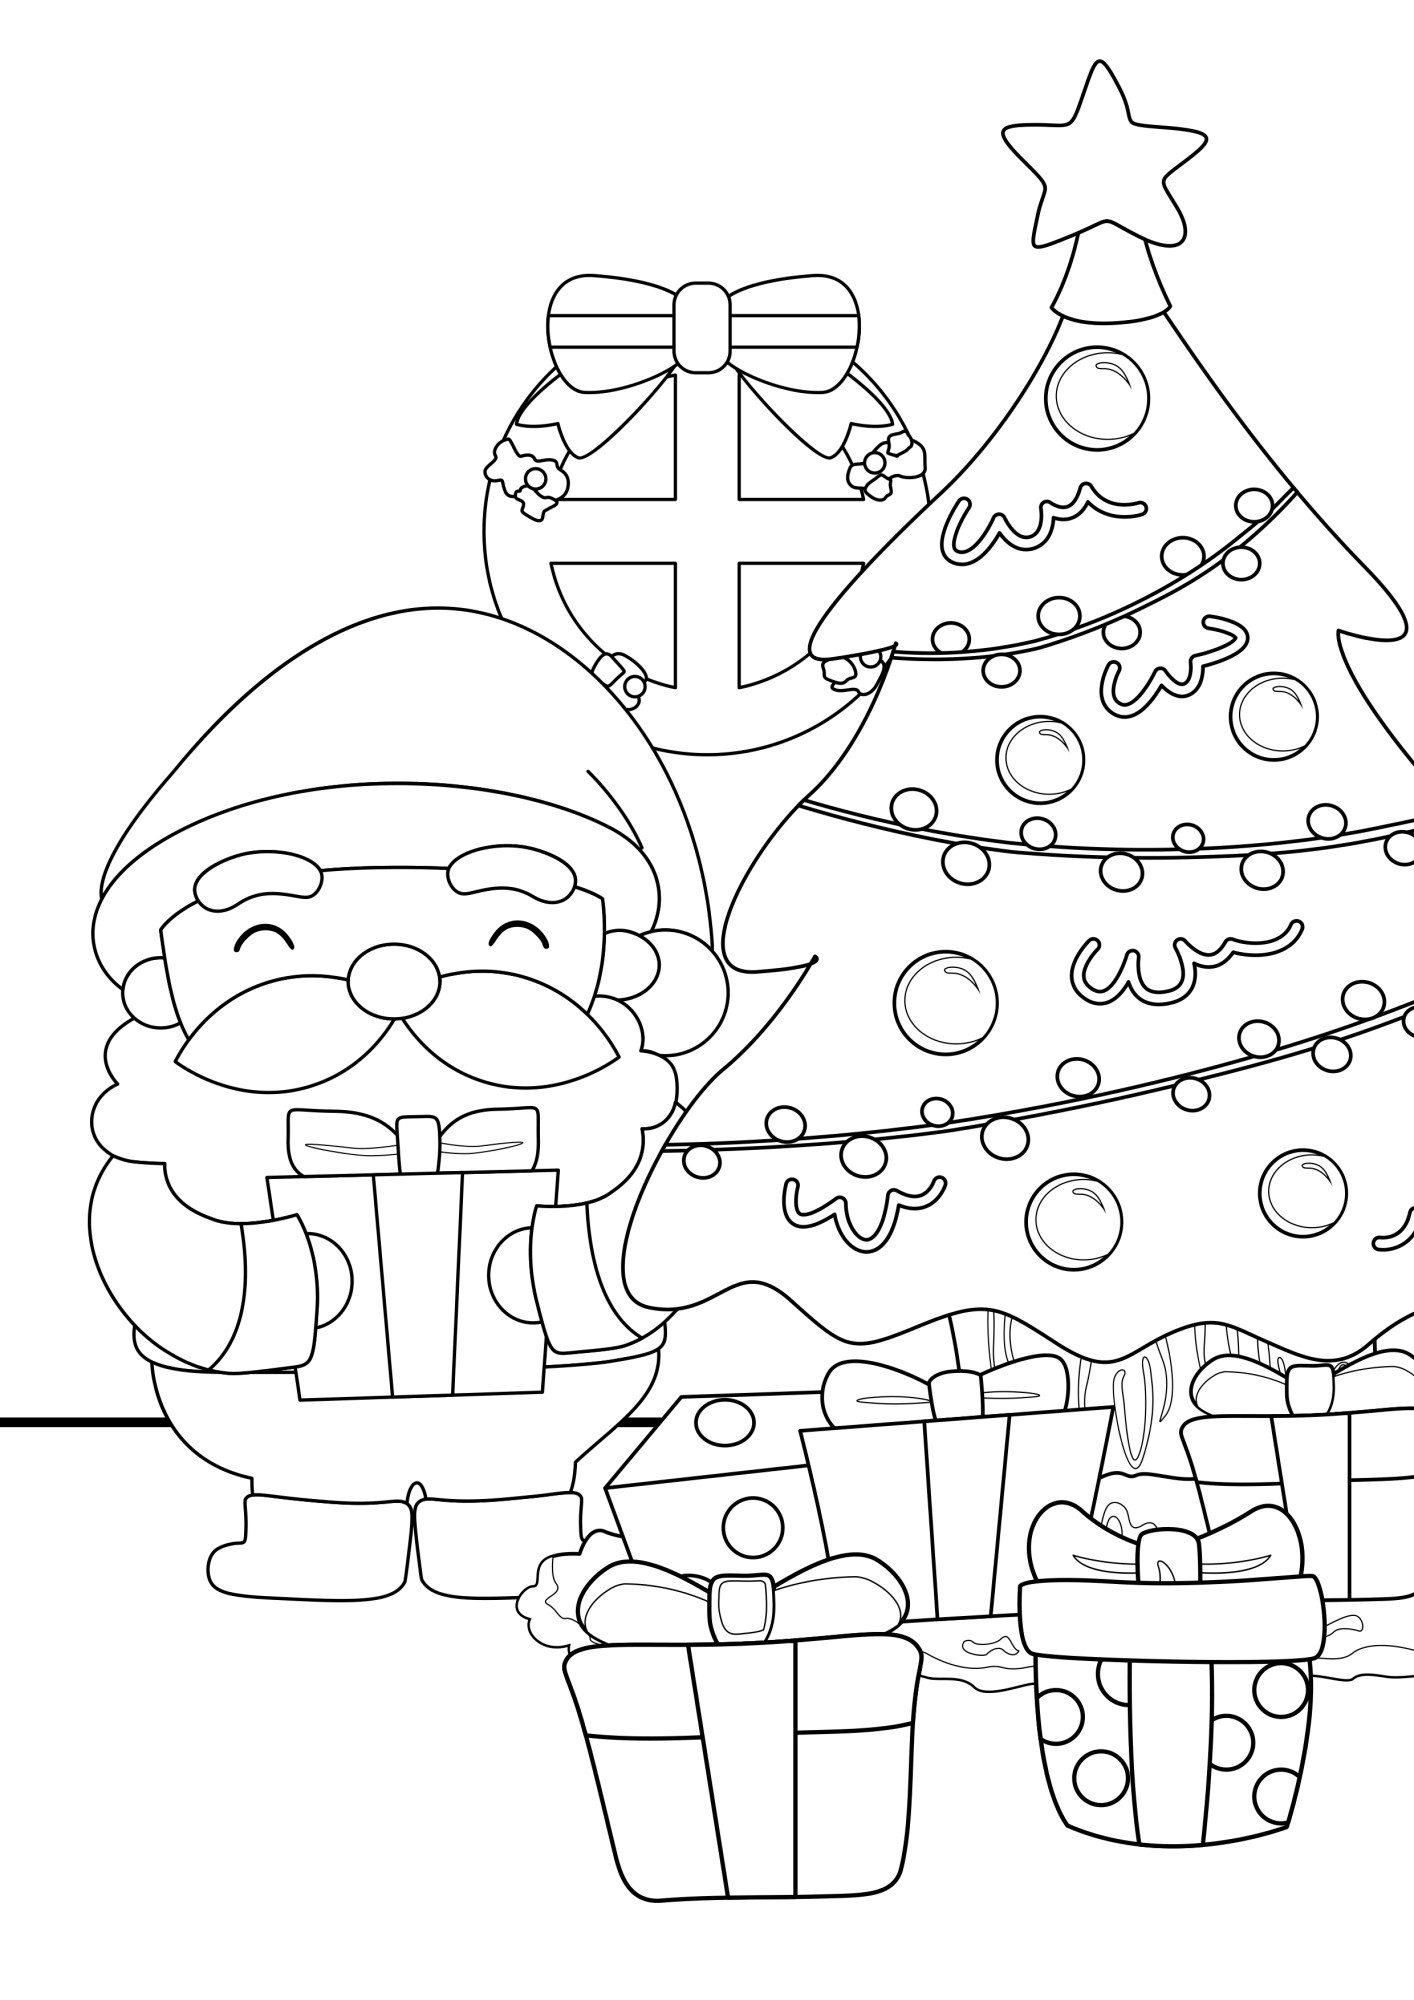 Раскраска для детей: украшенная новогодняя ёлка с подарками и дедом морозом